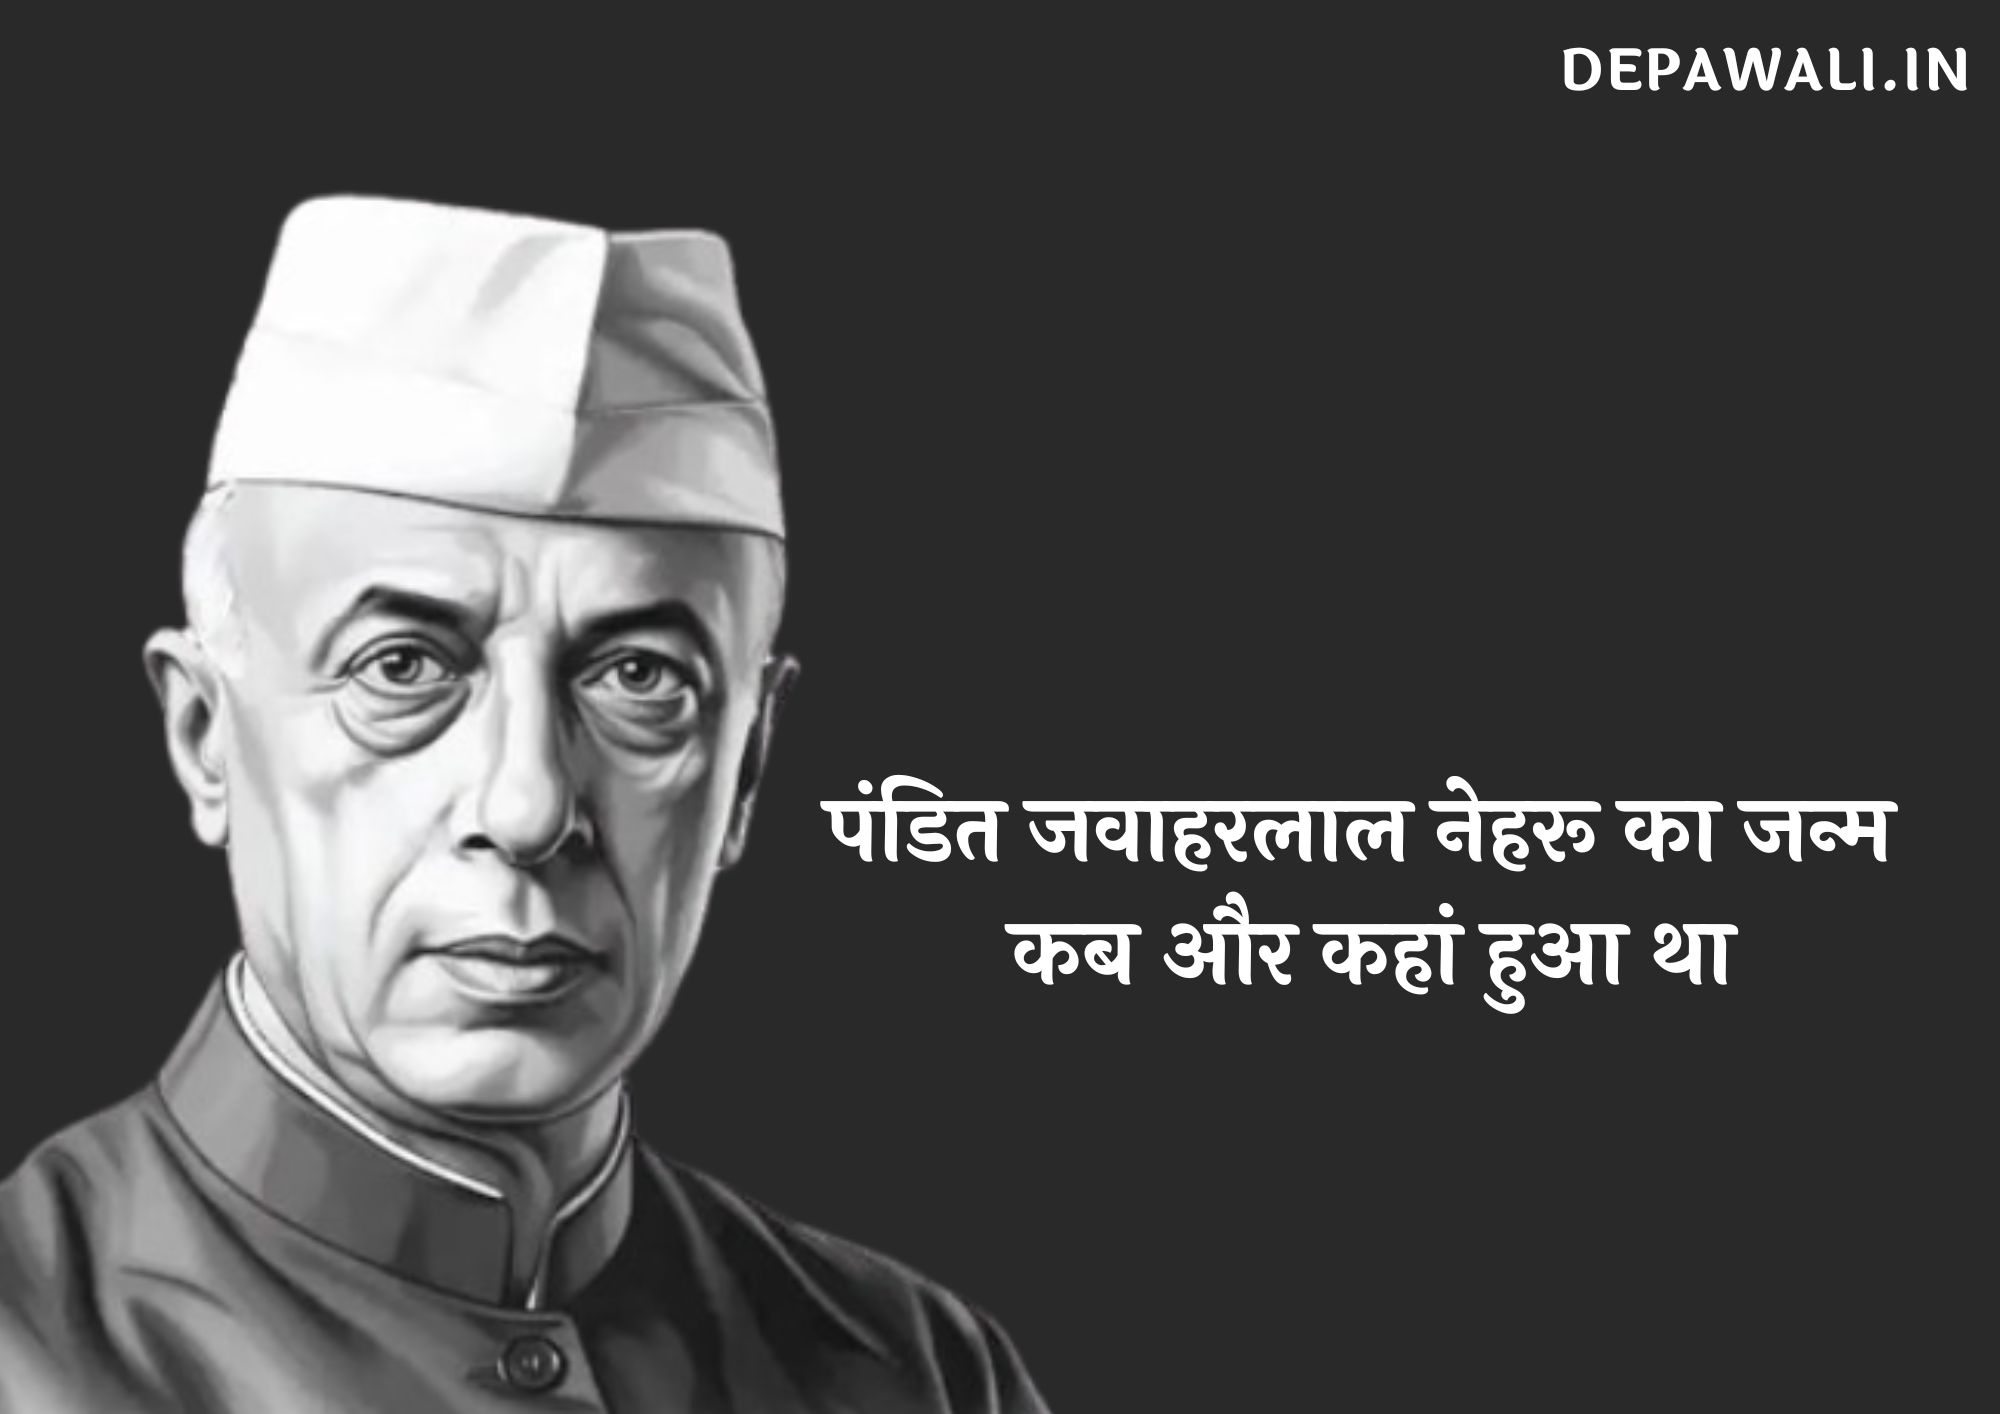 पंडित जवाहरलाल नेहरू का जन्म कब और कहां हुआ था - पंडित जवाहरलाल नेहरू का जन्म कब हुआ था, पंडित जवाहरलाल नेहरू का जन्म कहां हुआ था